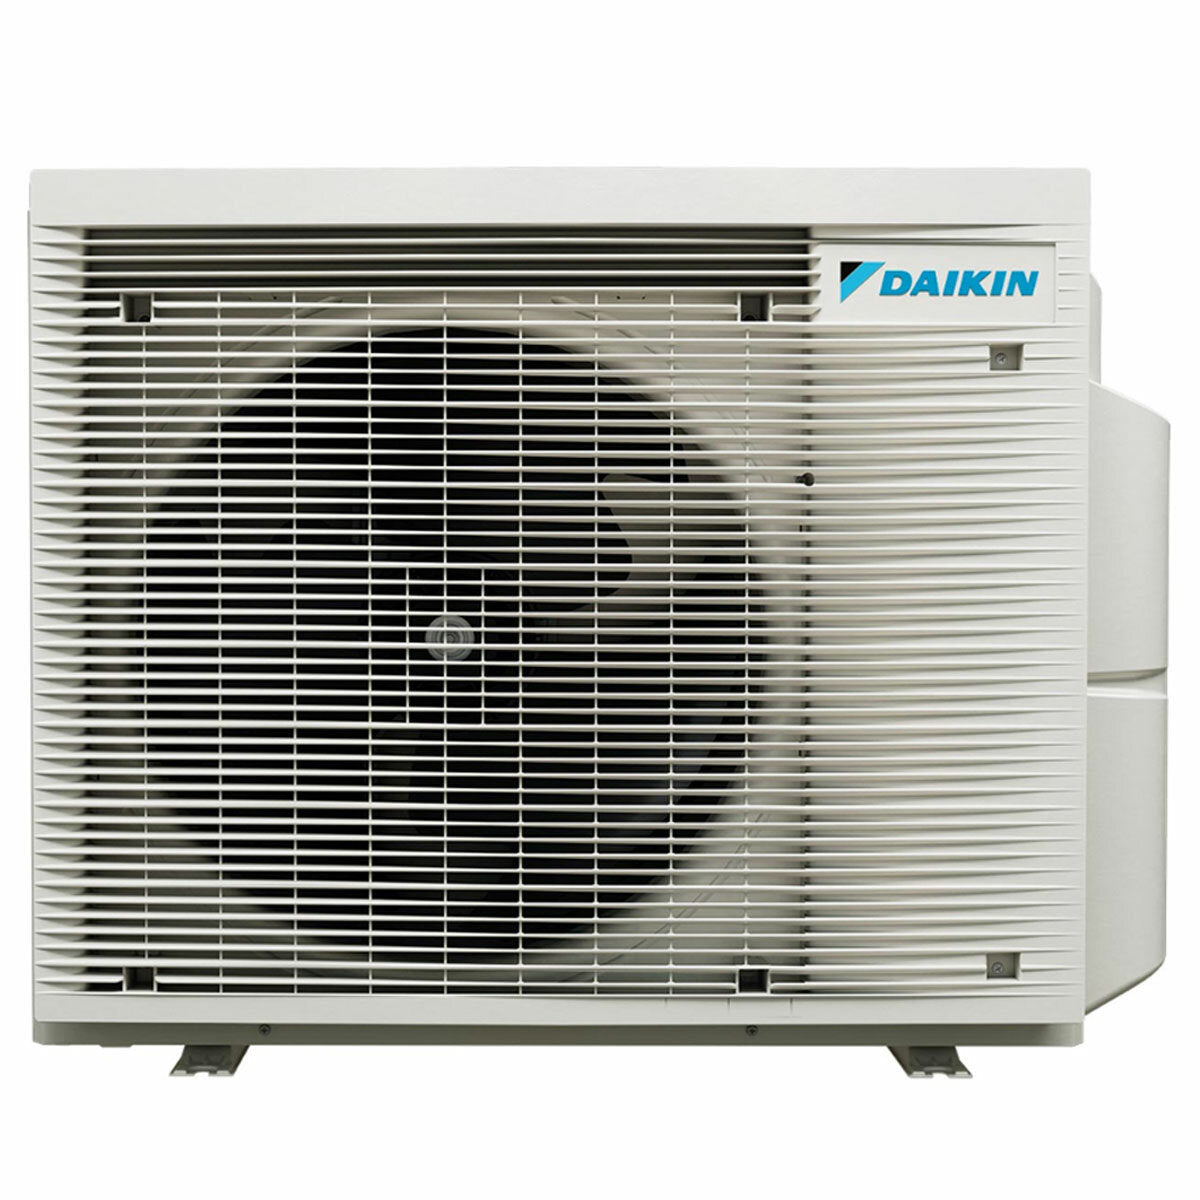 Daikin Perfera Floor climatiseur trial split 7000 + 12000 + 12000 BTU inverter A+++ wifi unité extérieure 5,2 kW